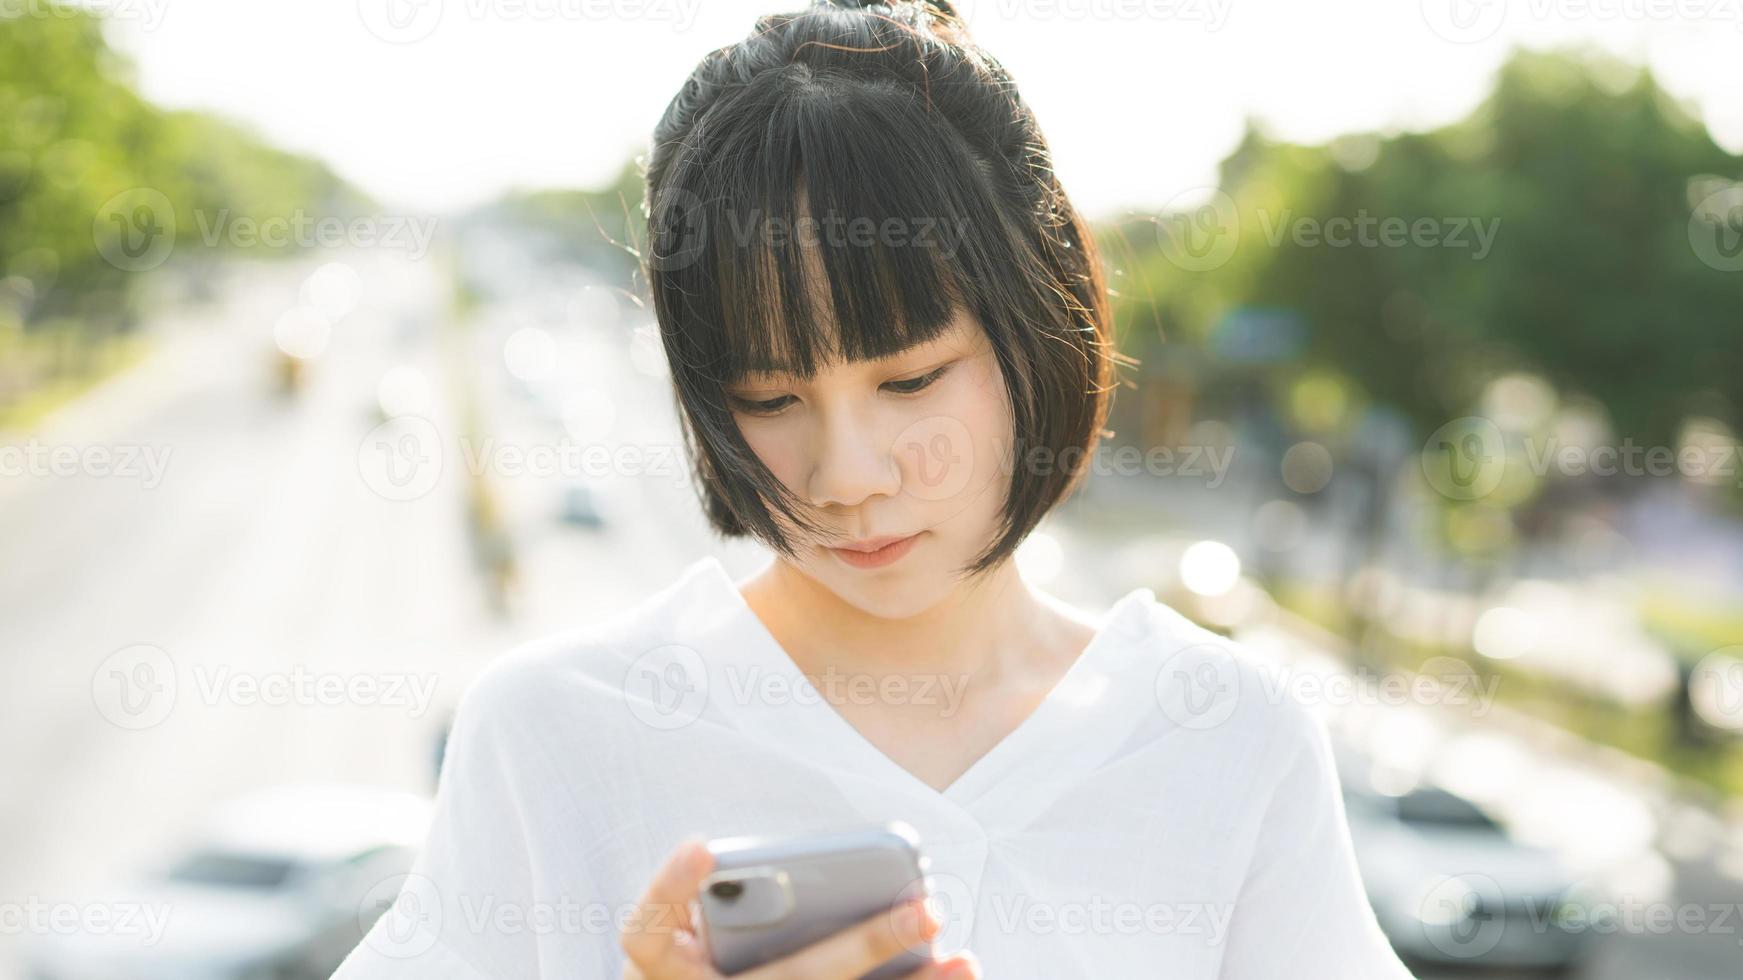 mujer de negocios asiática adulta joven que usa teléfono móvil encuentra una relación de citas a través de la aplicación. foto